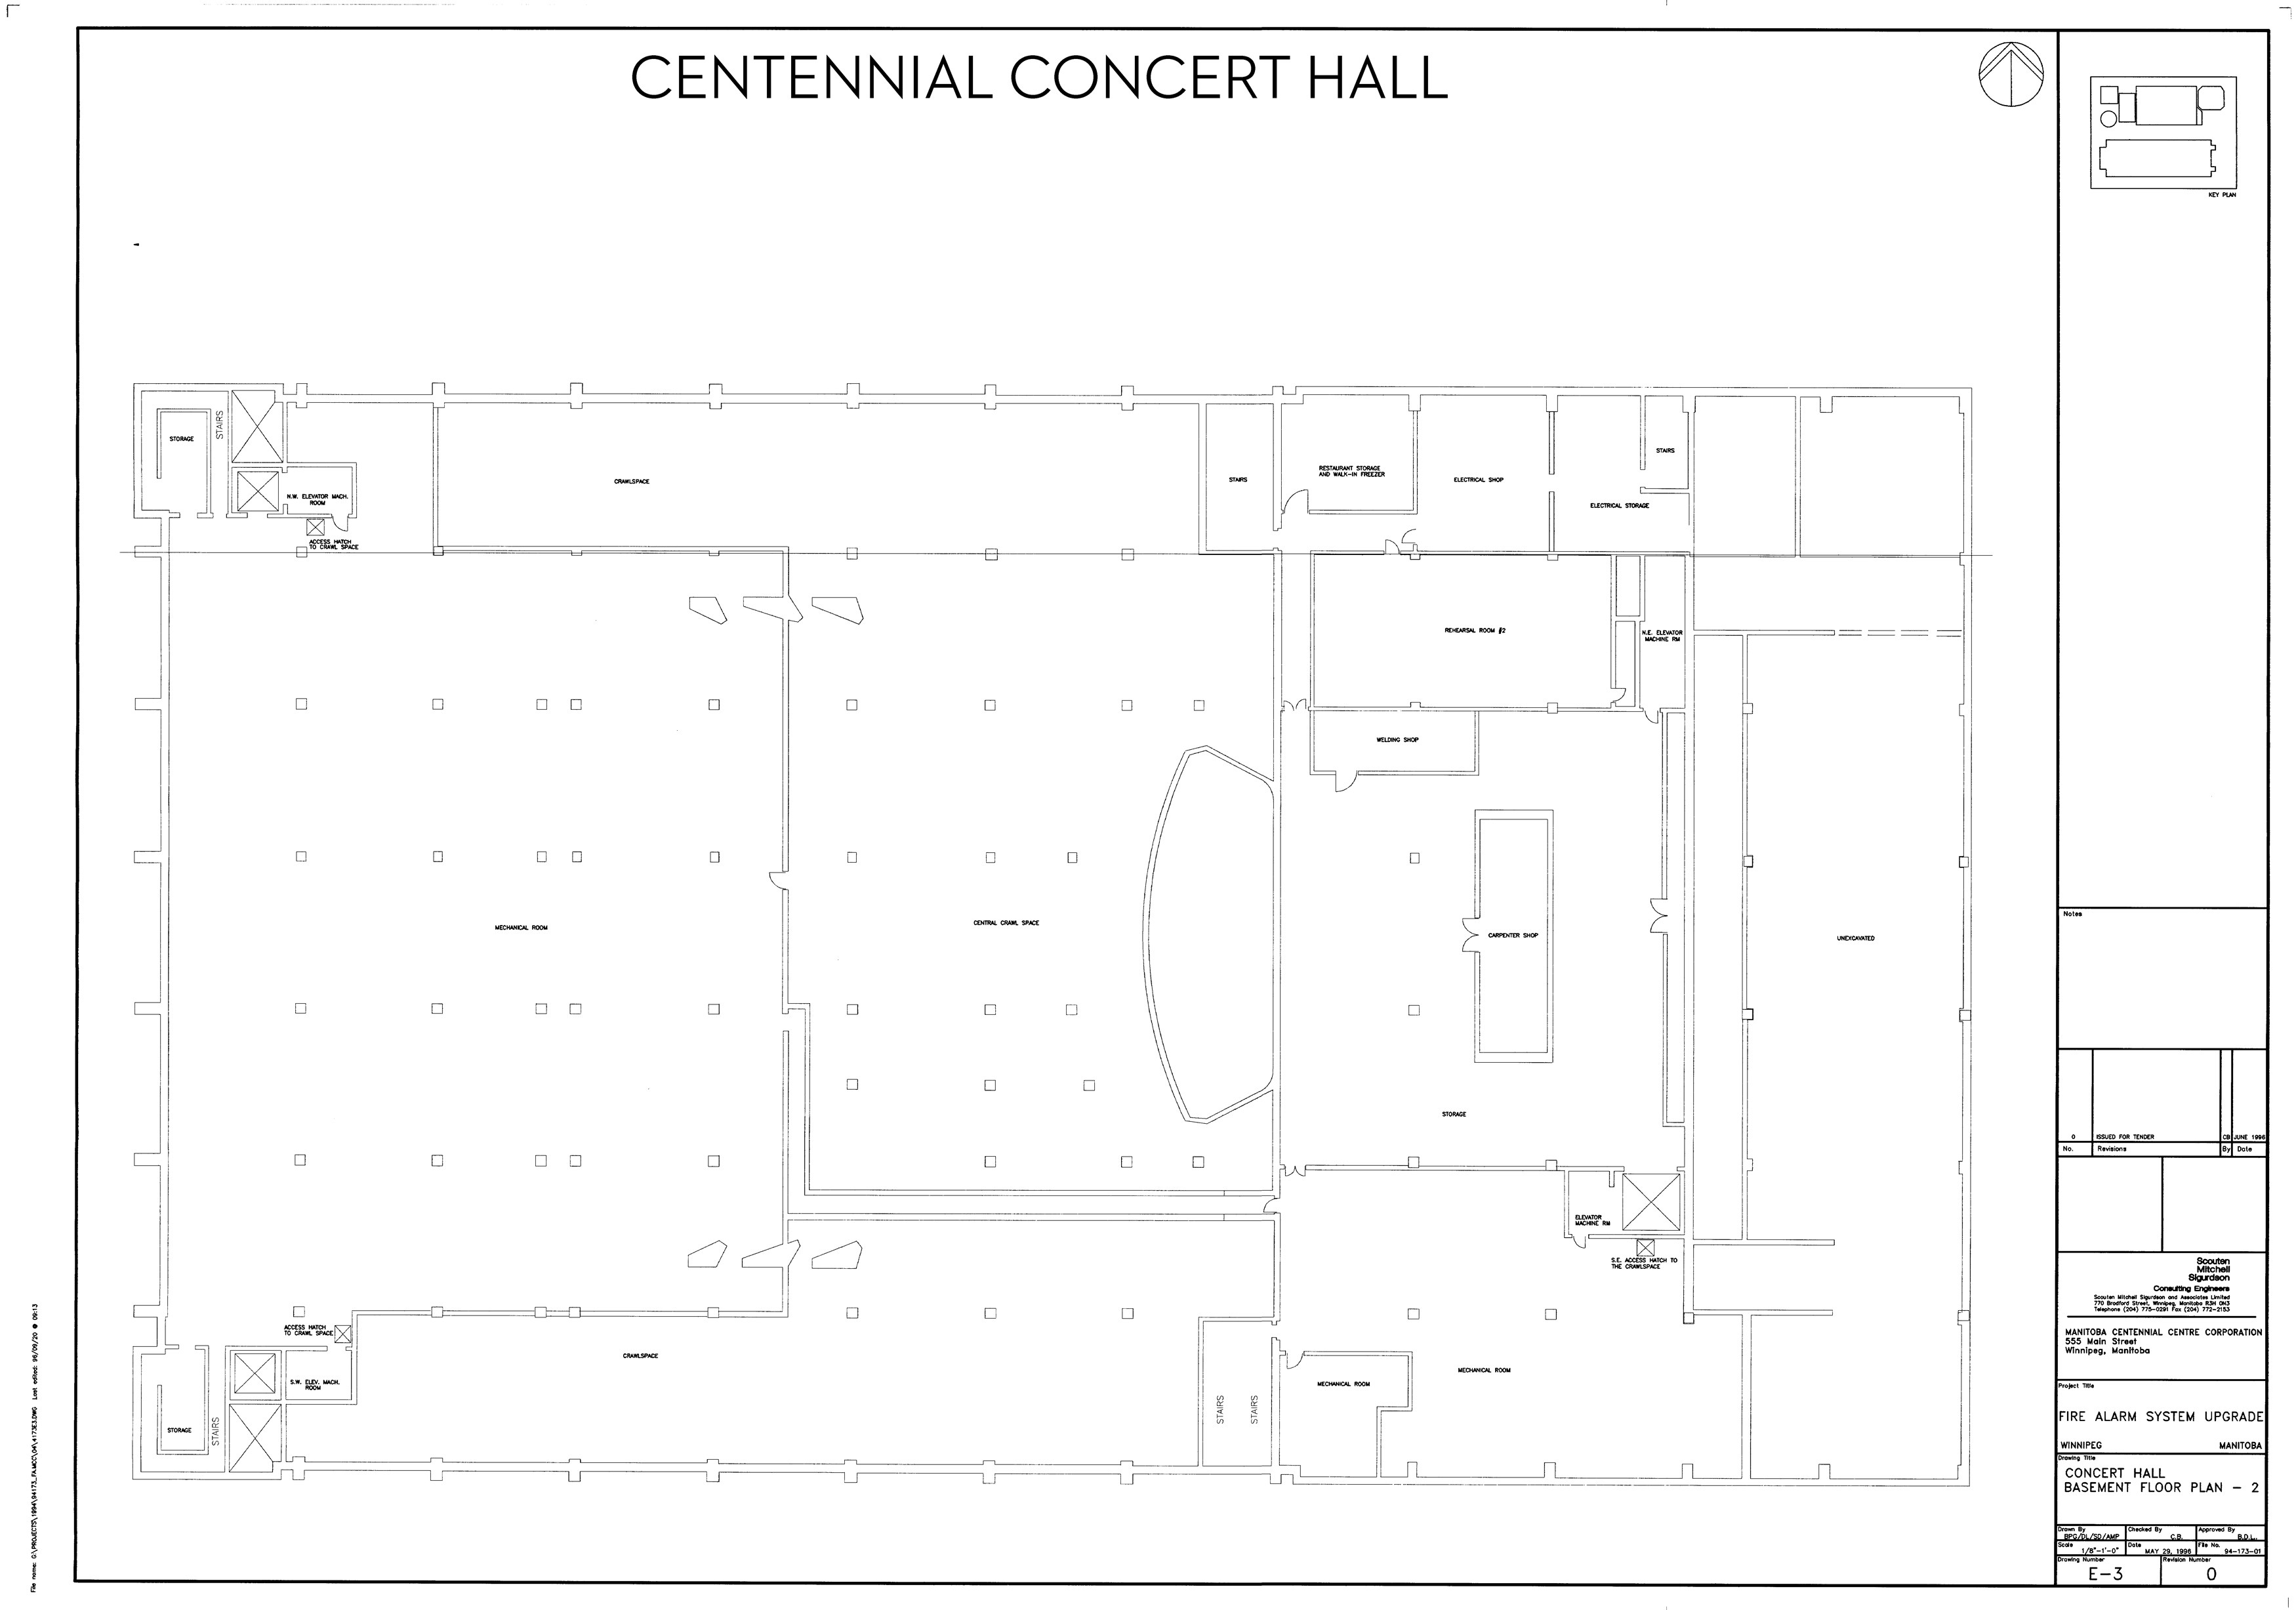 Centennial Hall Seating Chart